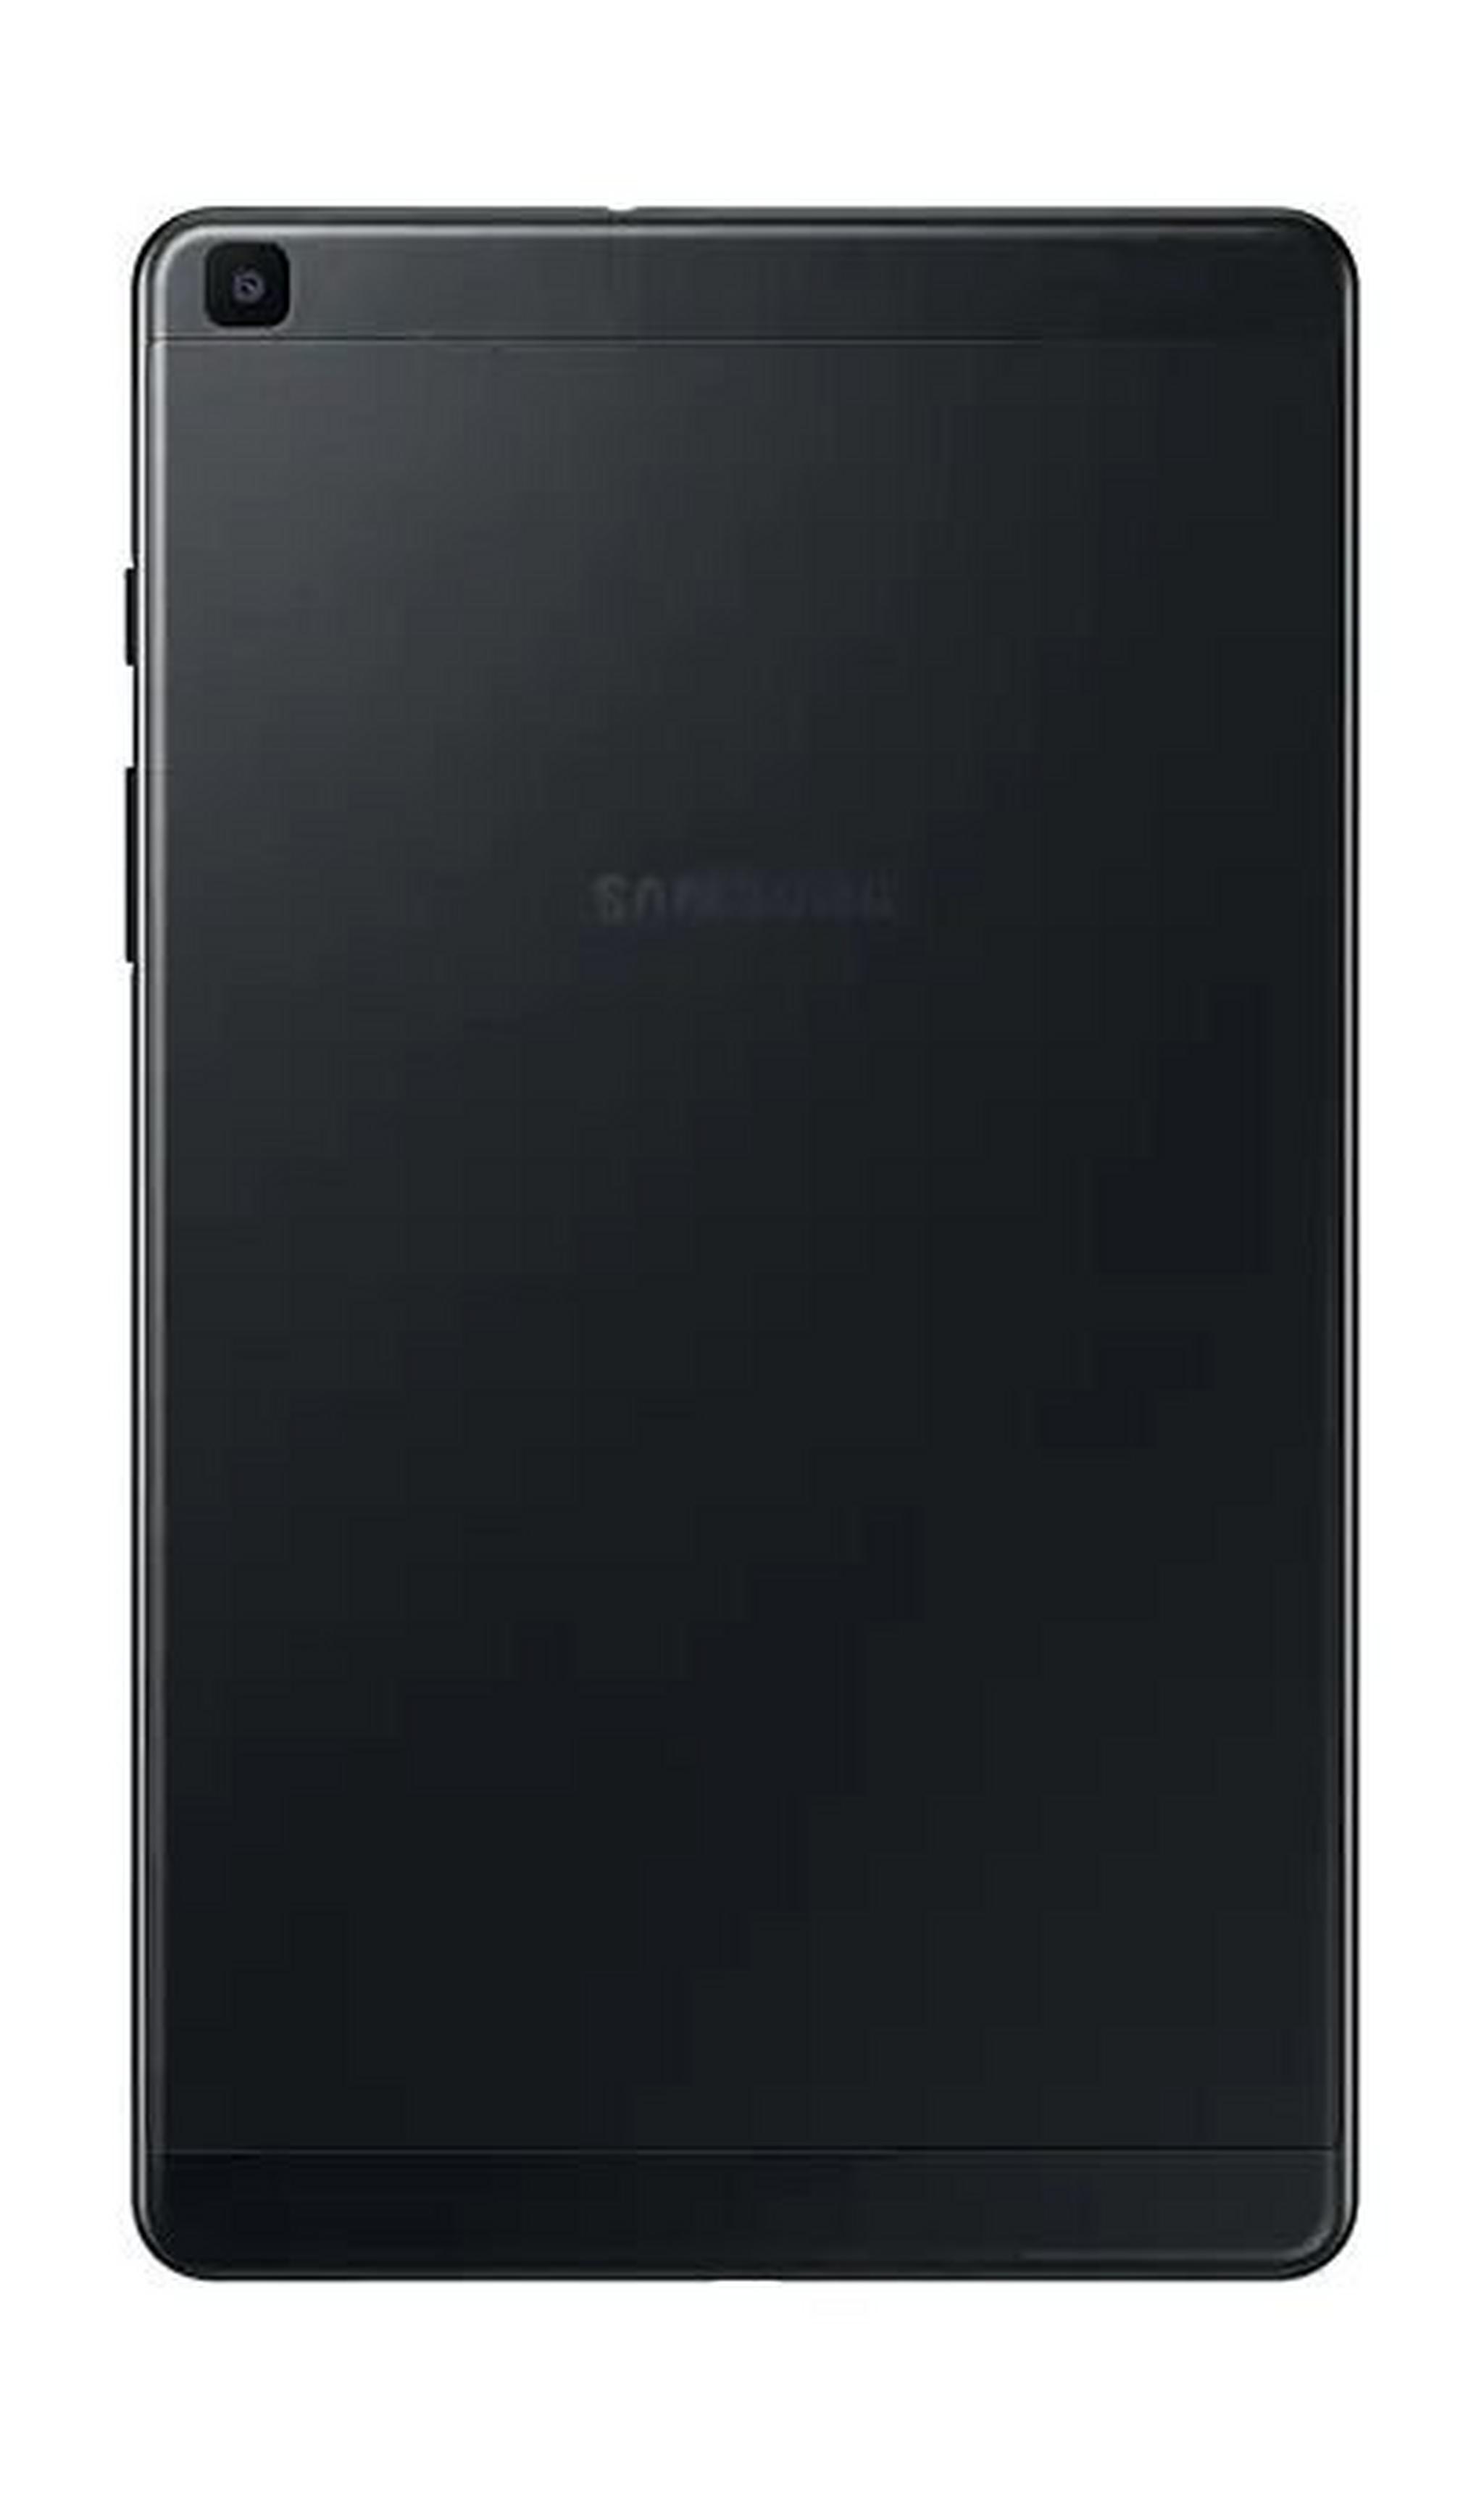 SAMSUNG Galaxy Tab A 2019 8-inch 32GB Wi-Fi Only Tablet - Black